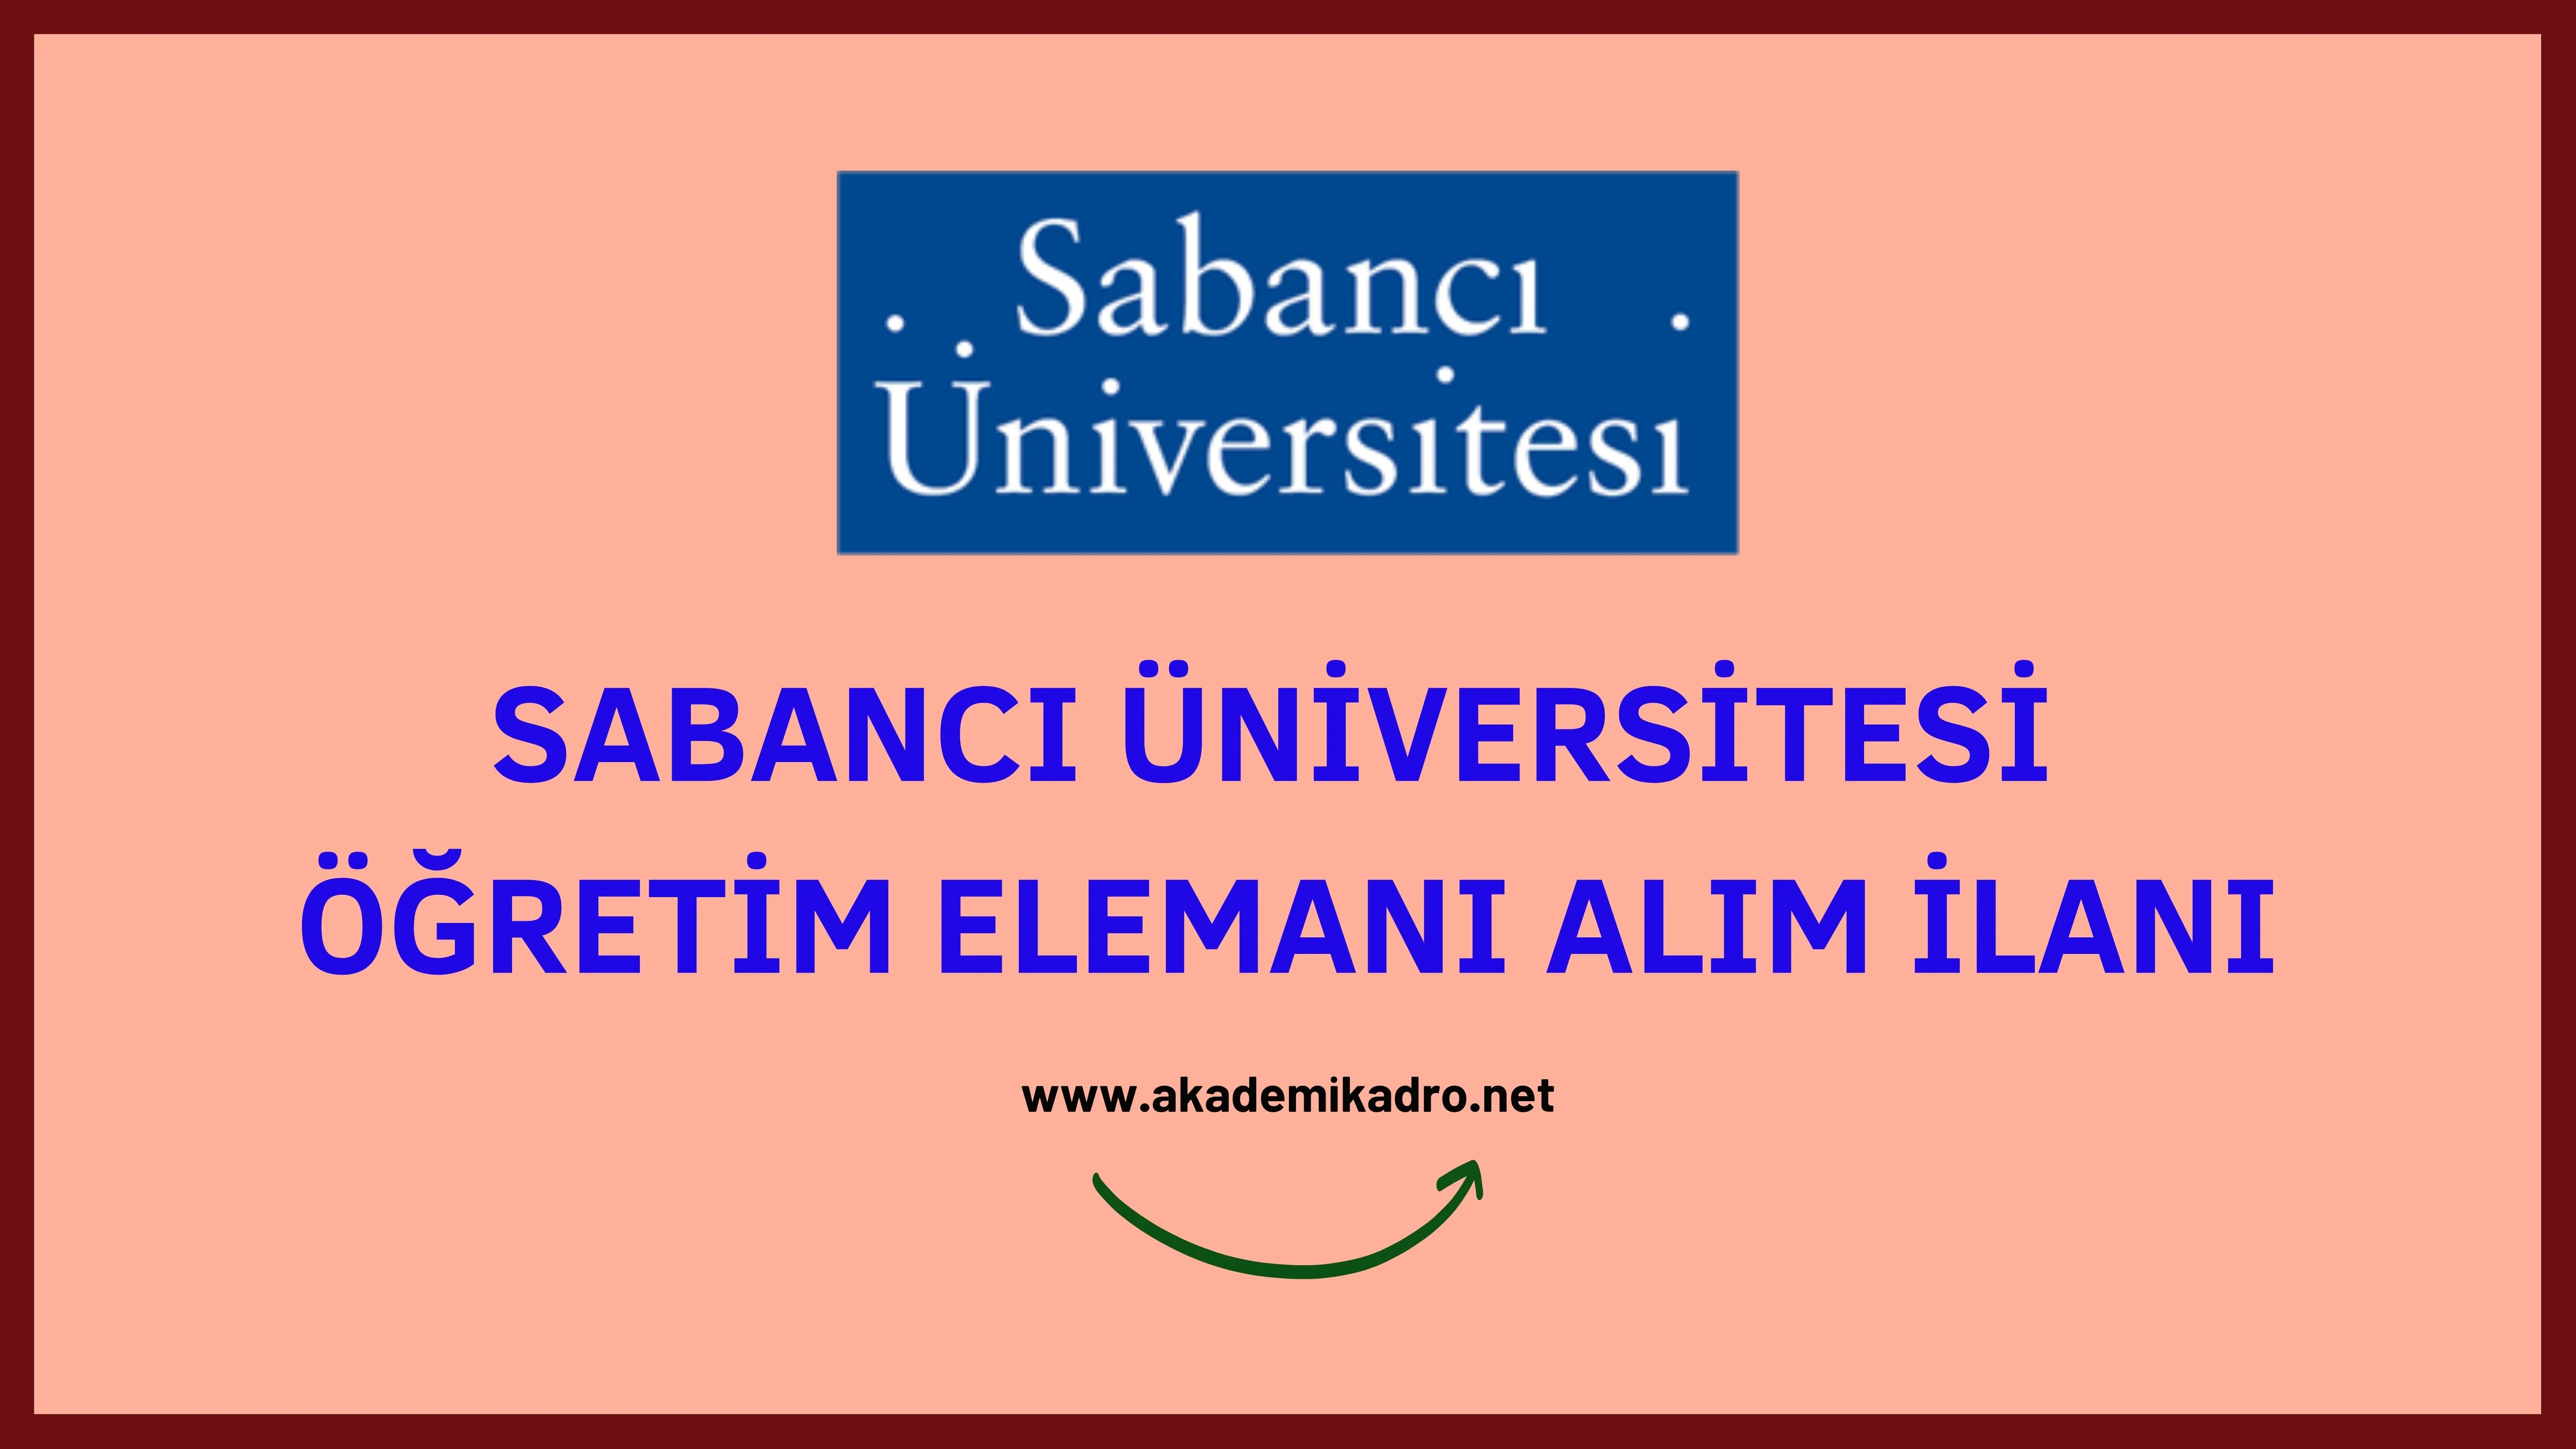 Sabancı Üniversitesi 2 Araştırma görevlisi alacak. Son başvuru tarihi 30 Aralık 2022.